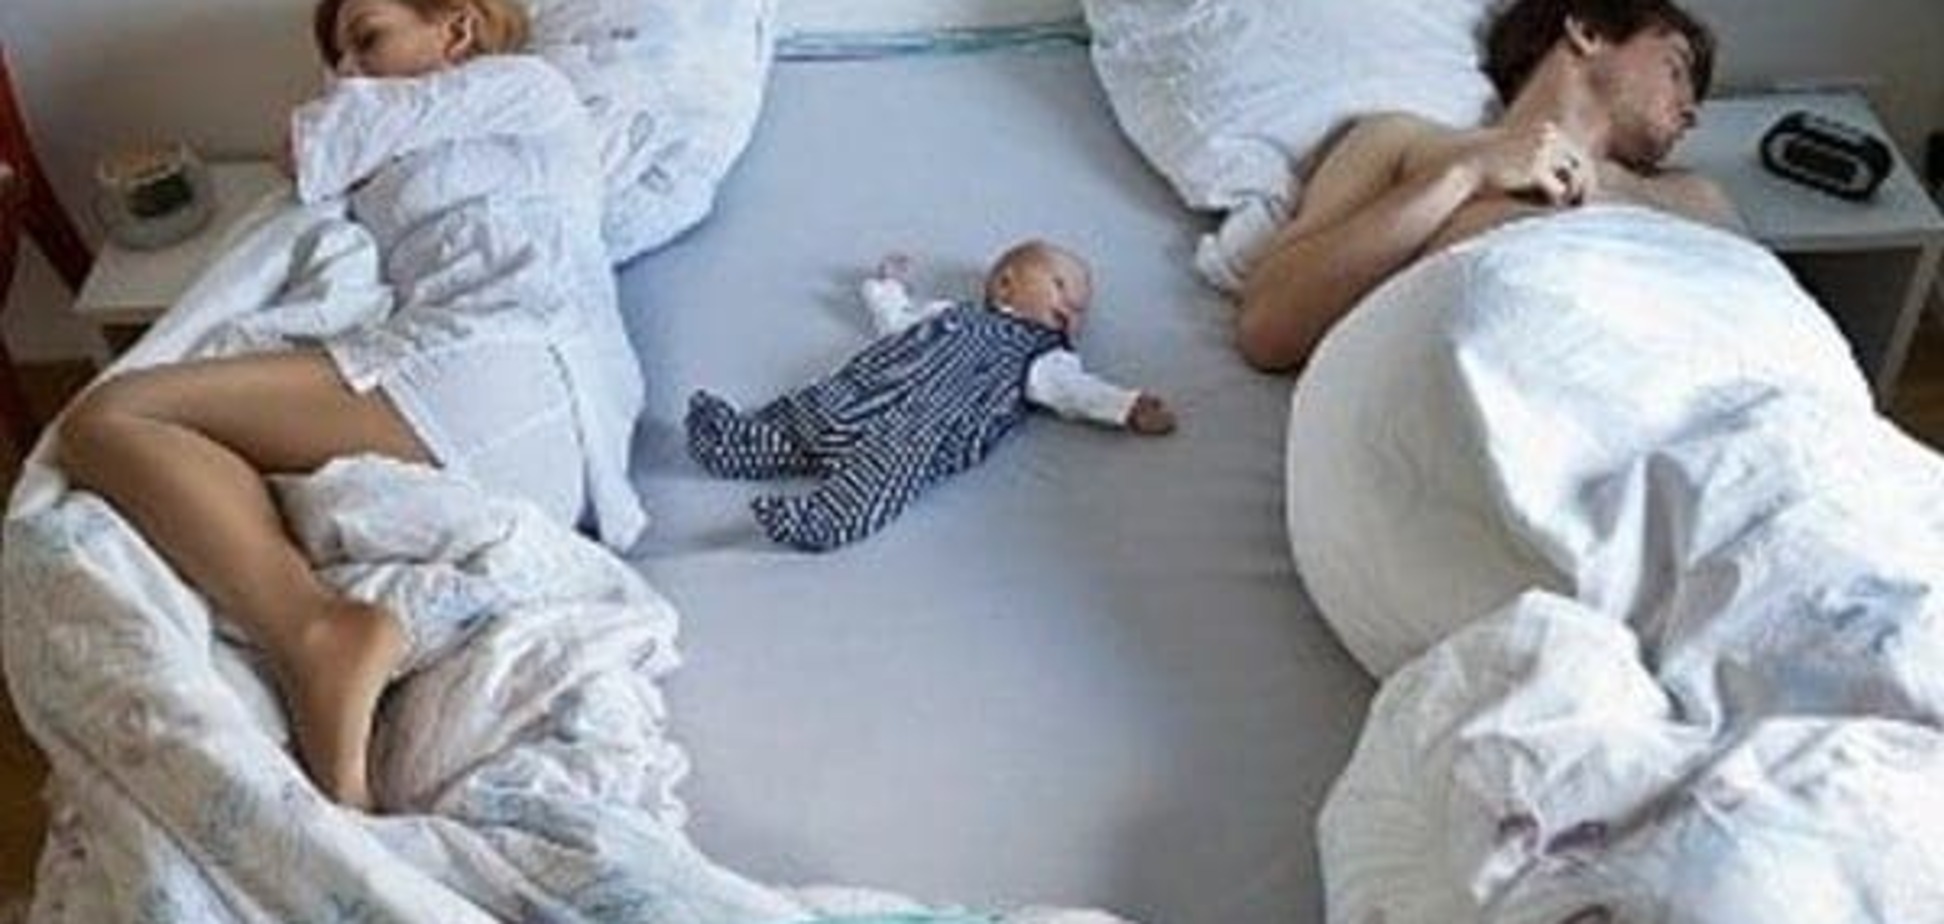 Ребенок в родительской постели - никакого секса. Правда или нет?